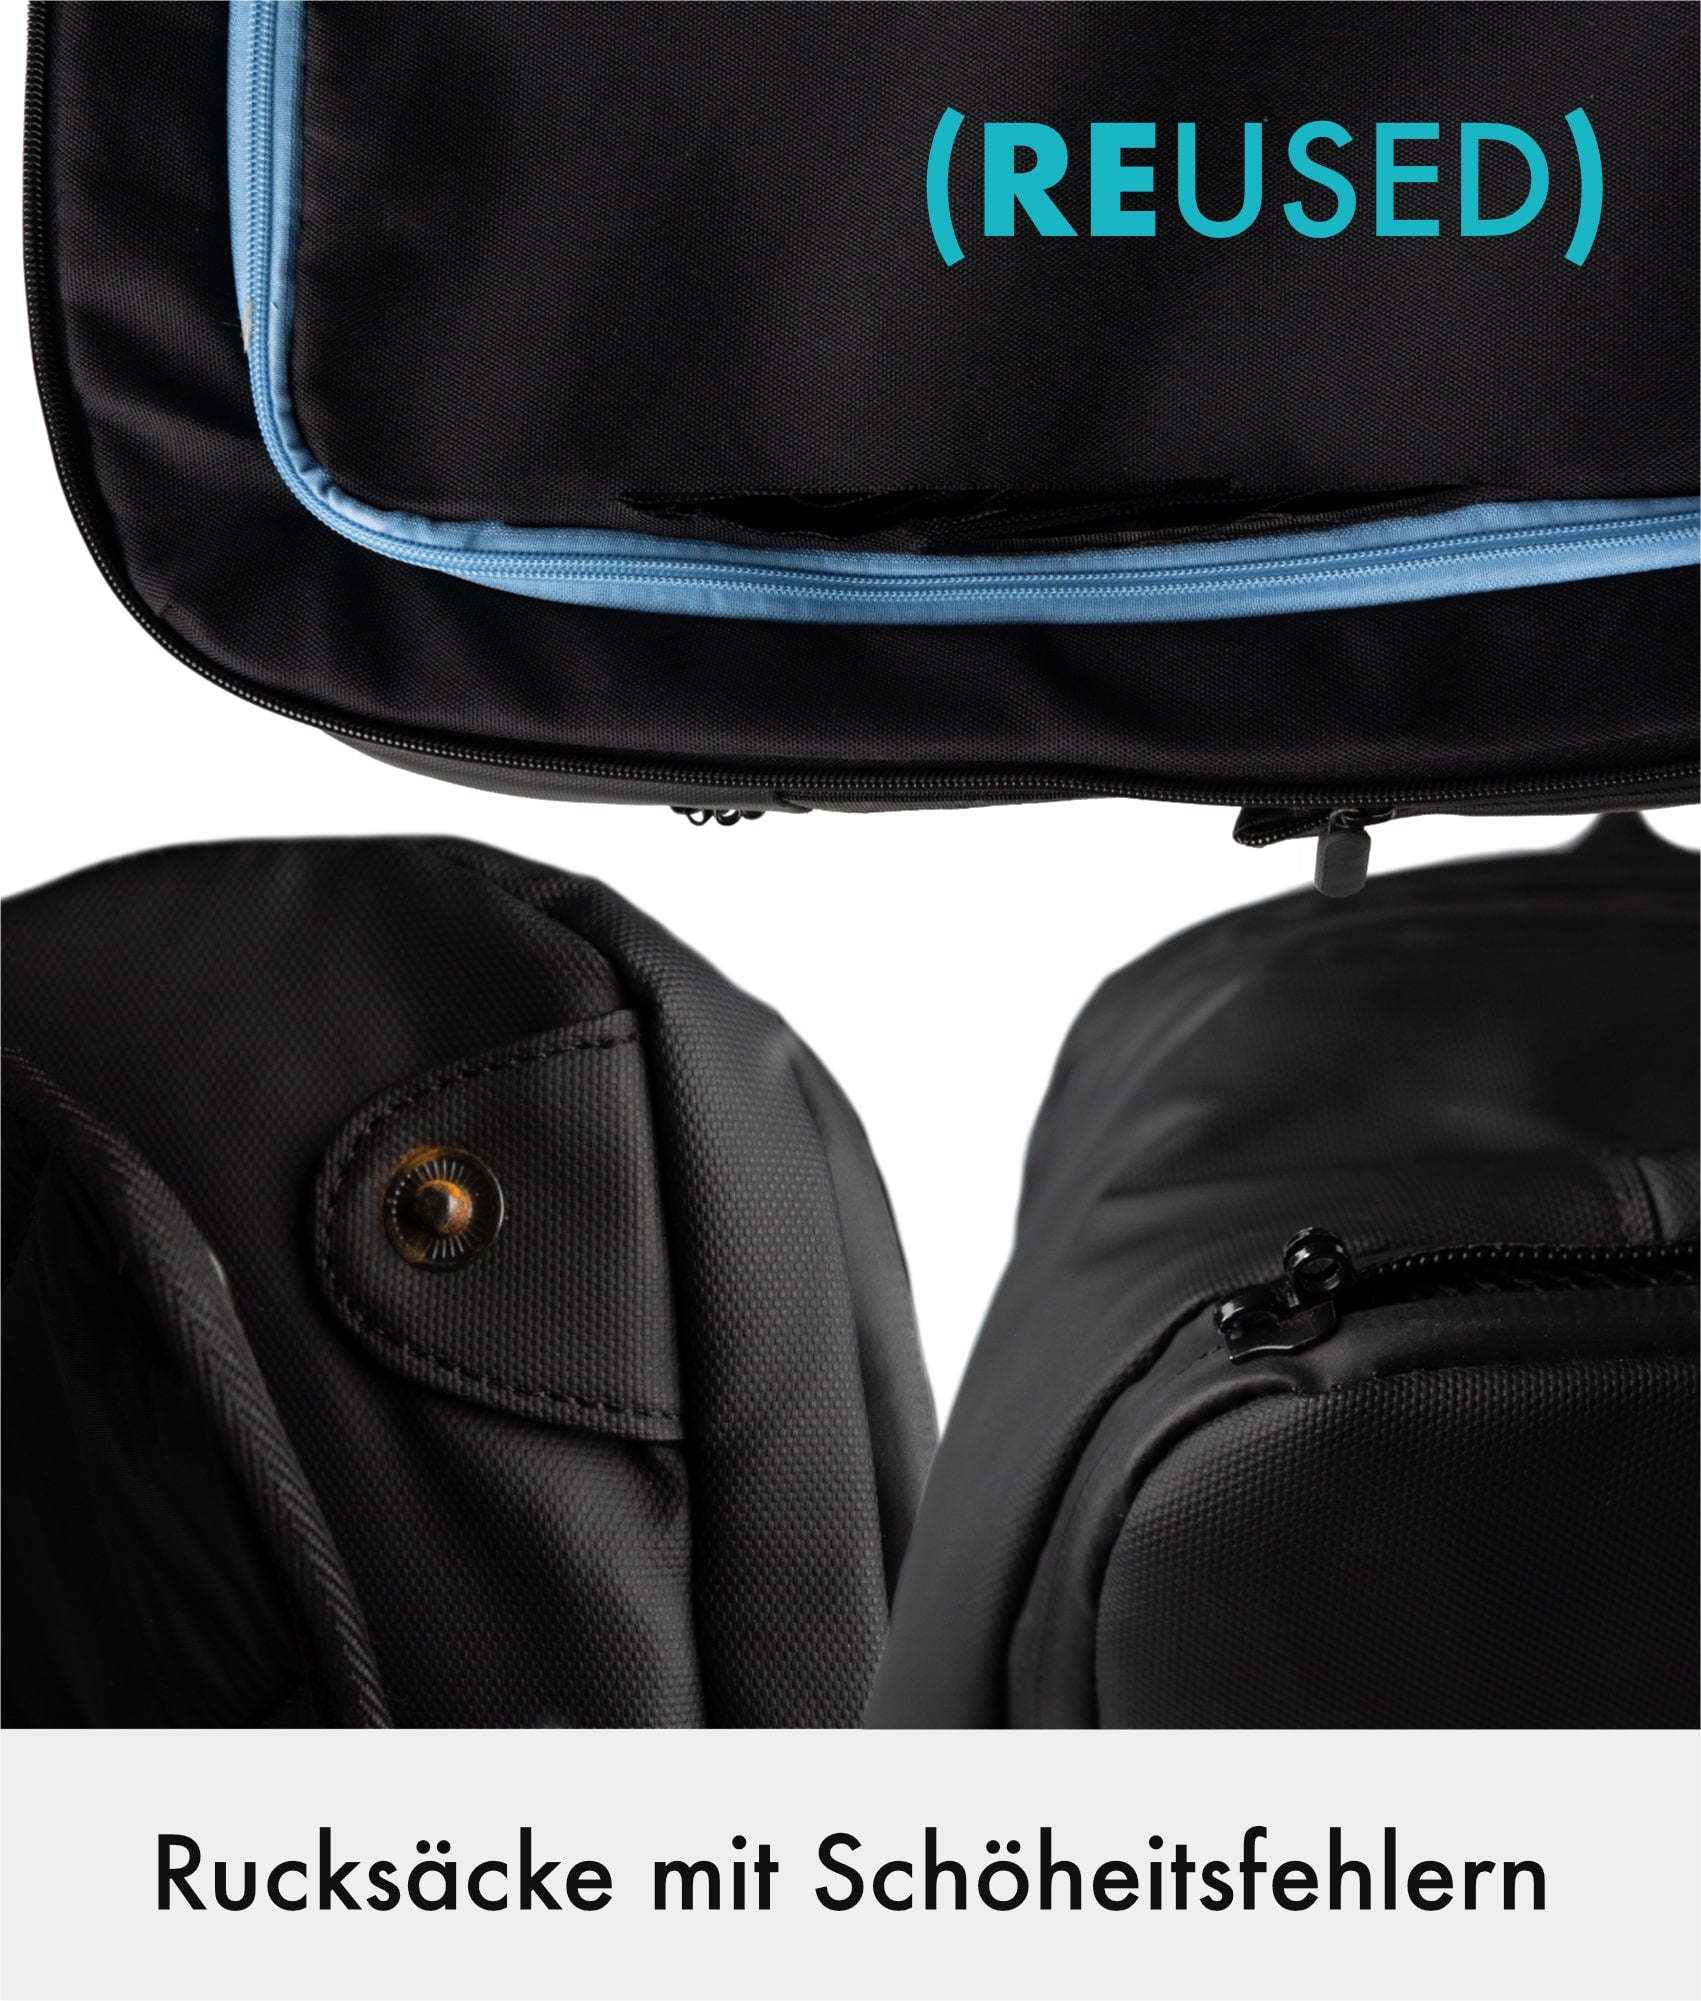 Business Bag Pro (REUSED)